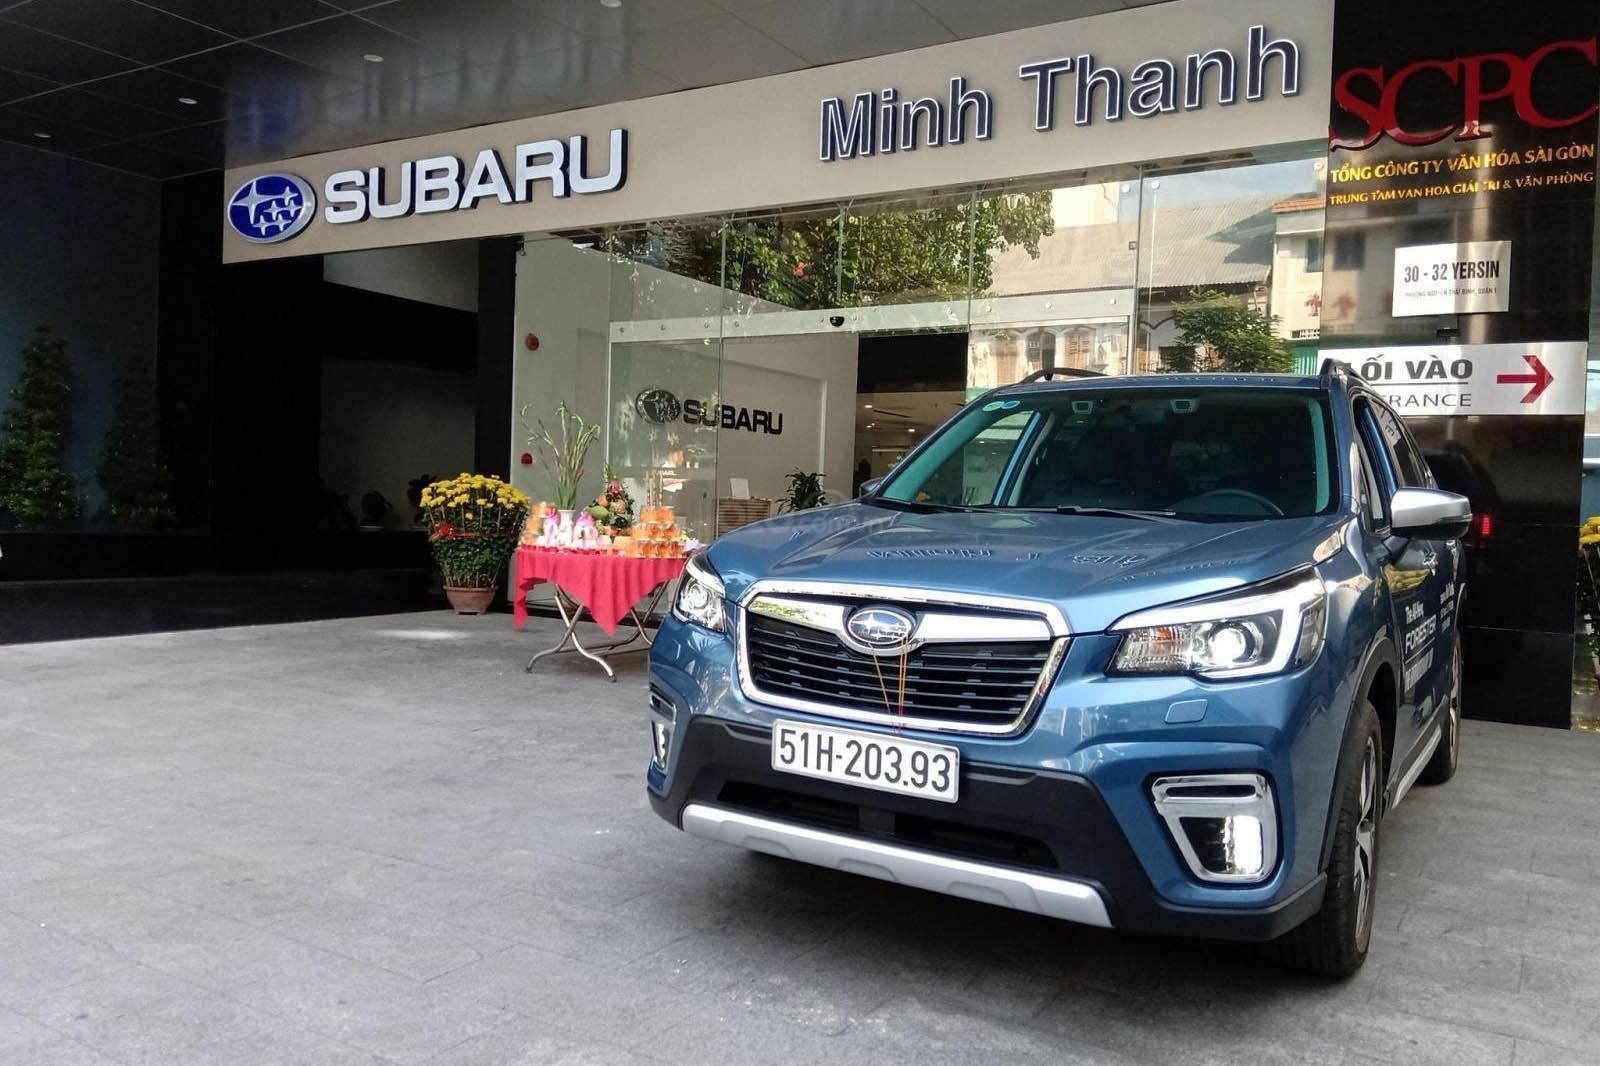 Triết lý và Mục tiêu Kinh doanh của Subaru Minh Thanh 4S